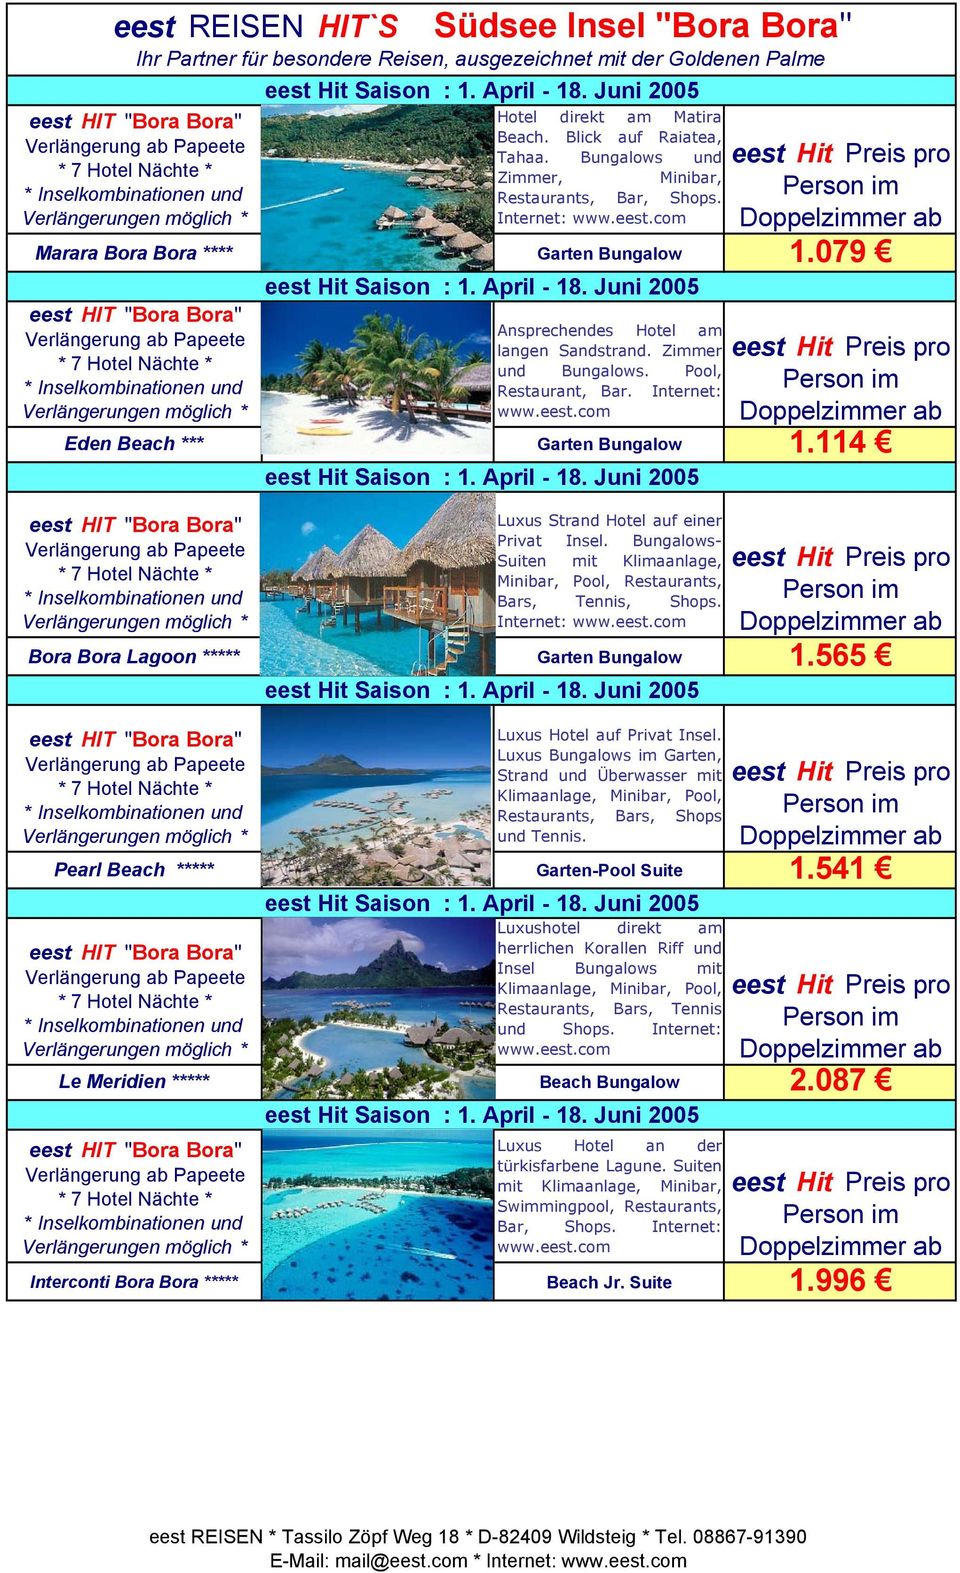 Bungalows- Suiten mit Klimaanlage, Minibar, Restaurants, Bars, Tennis, Shops. Bora Bora Lagoon ***** Garten Bungalow 1.565 Luxus Hotel auf Privat Insel.